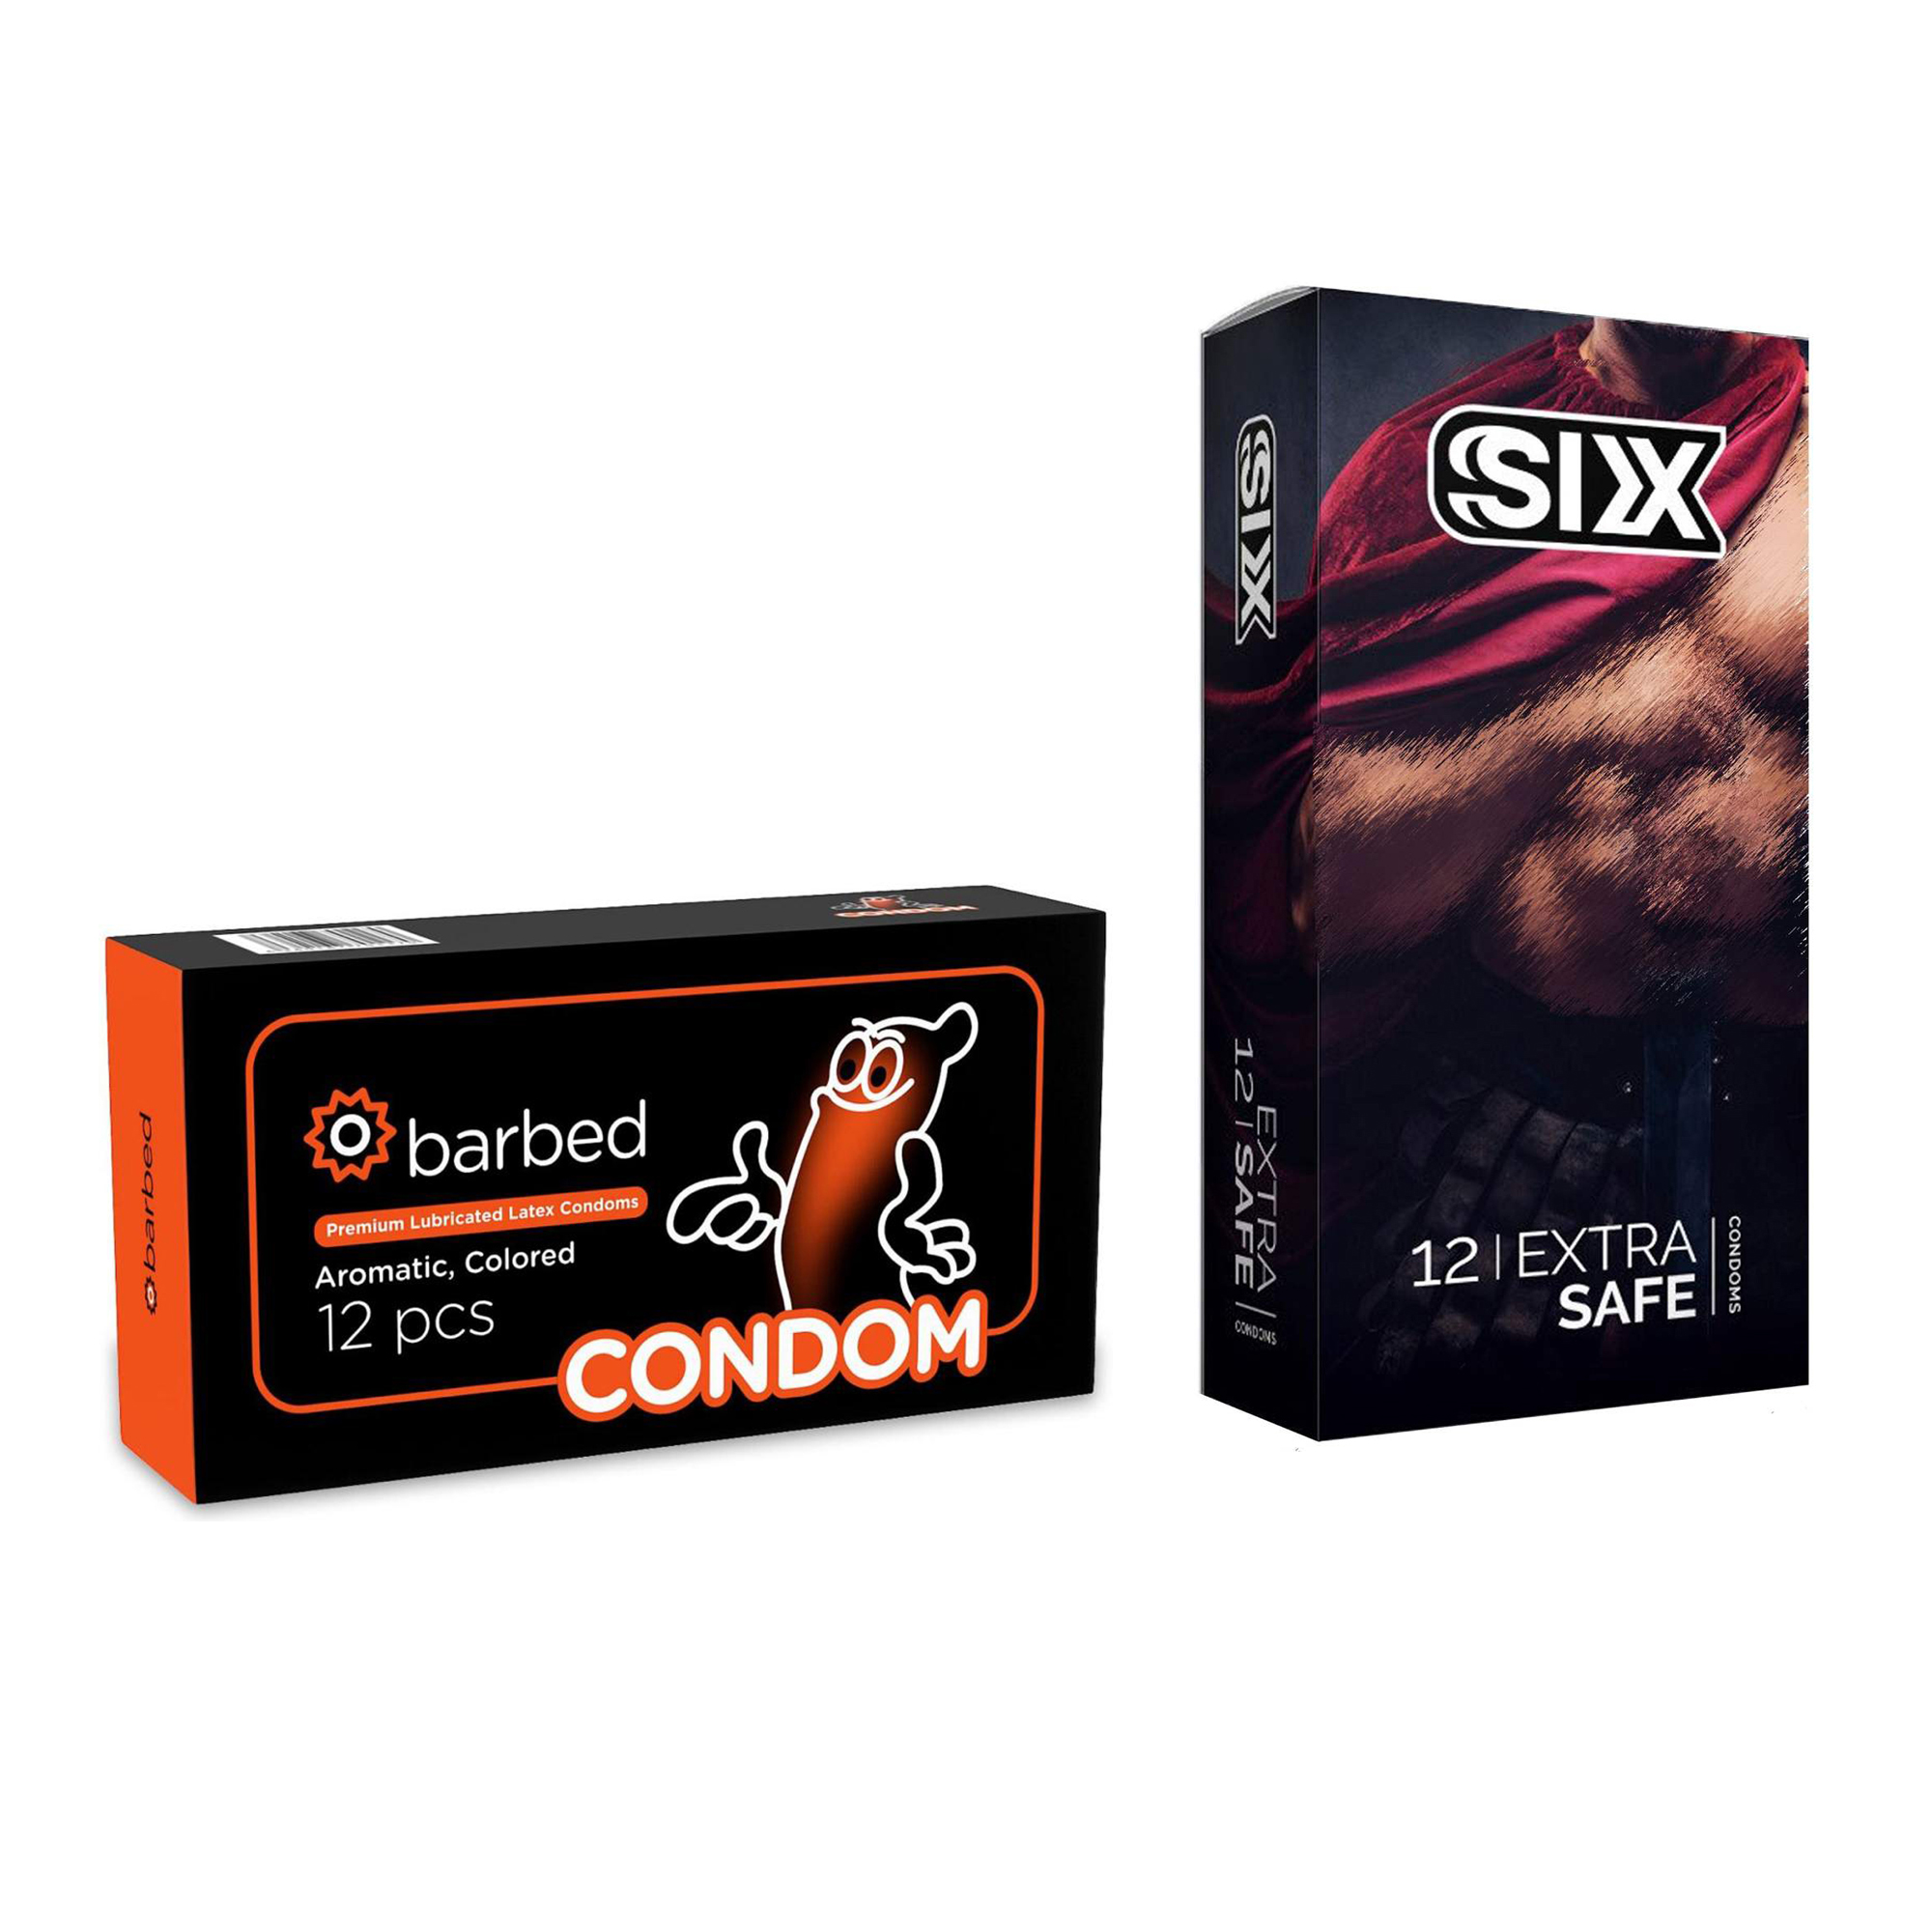 کاندوم سیکس مدل Max Safety بسته 12 عددی به همراه کاندوم کاندوم مدل Barbed بسته 12 عددی